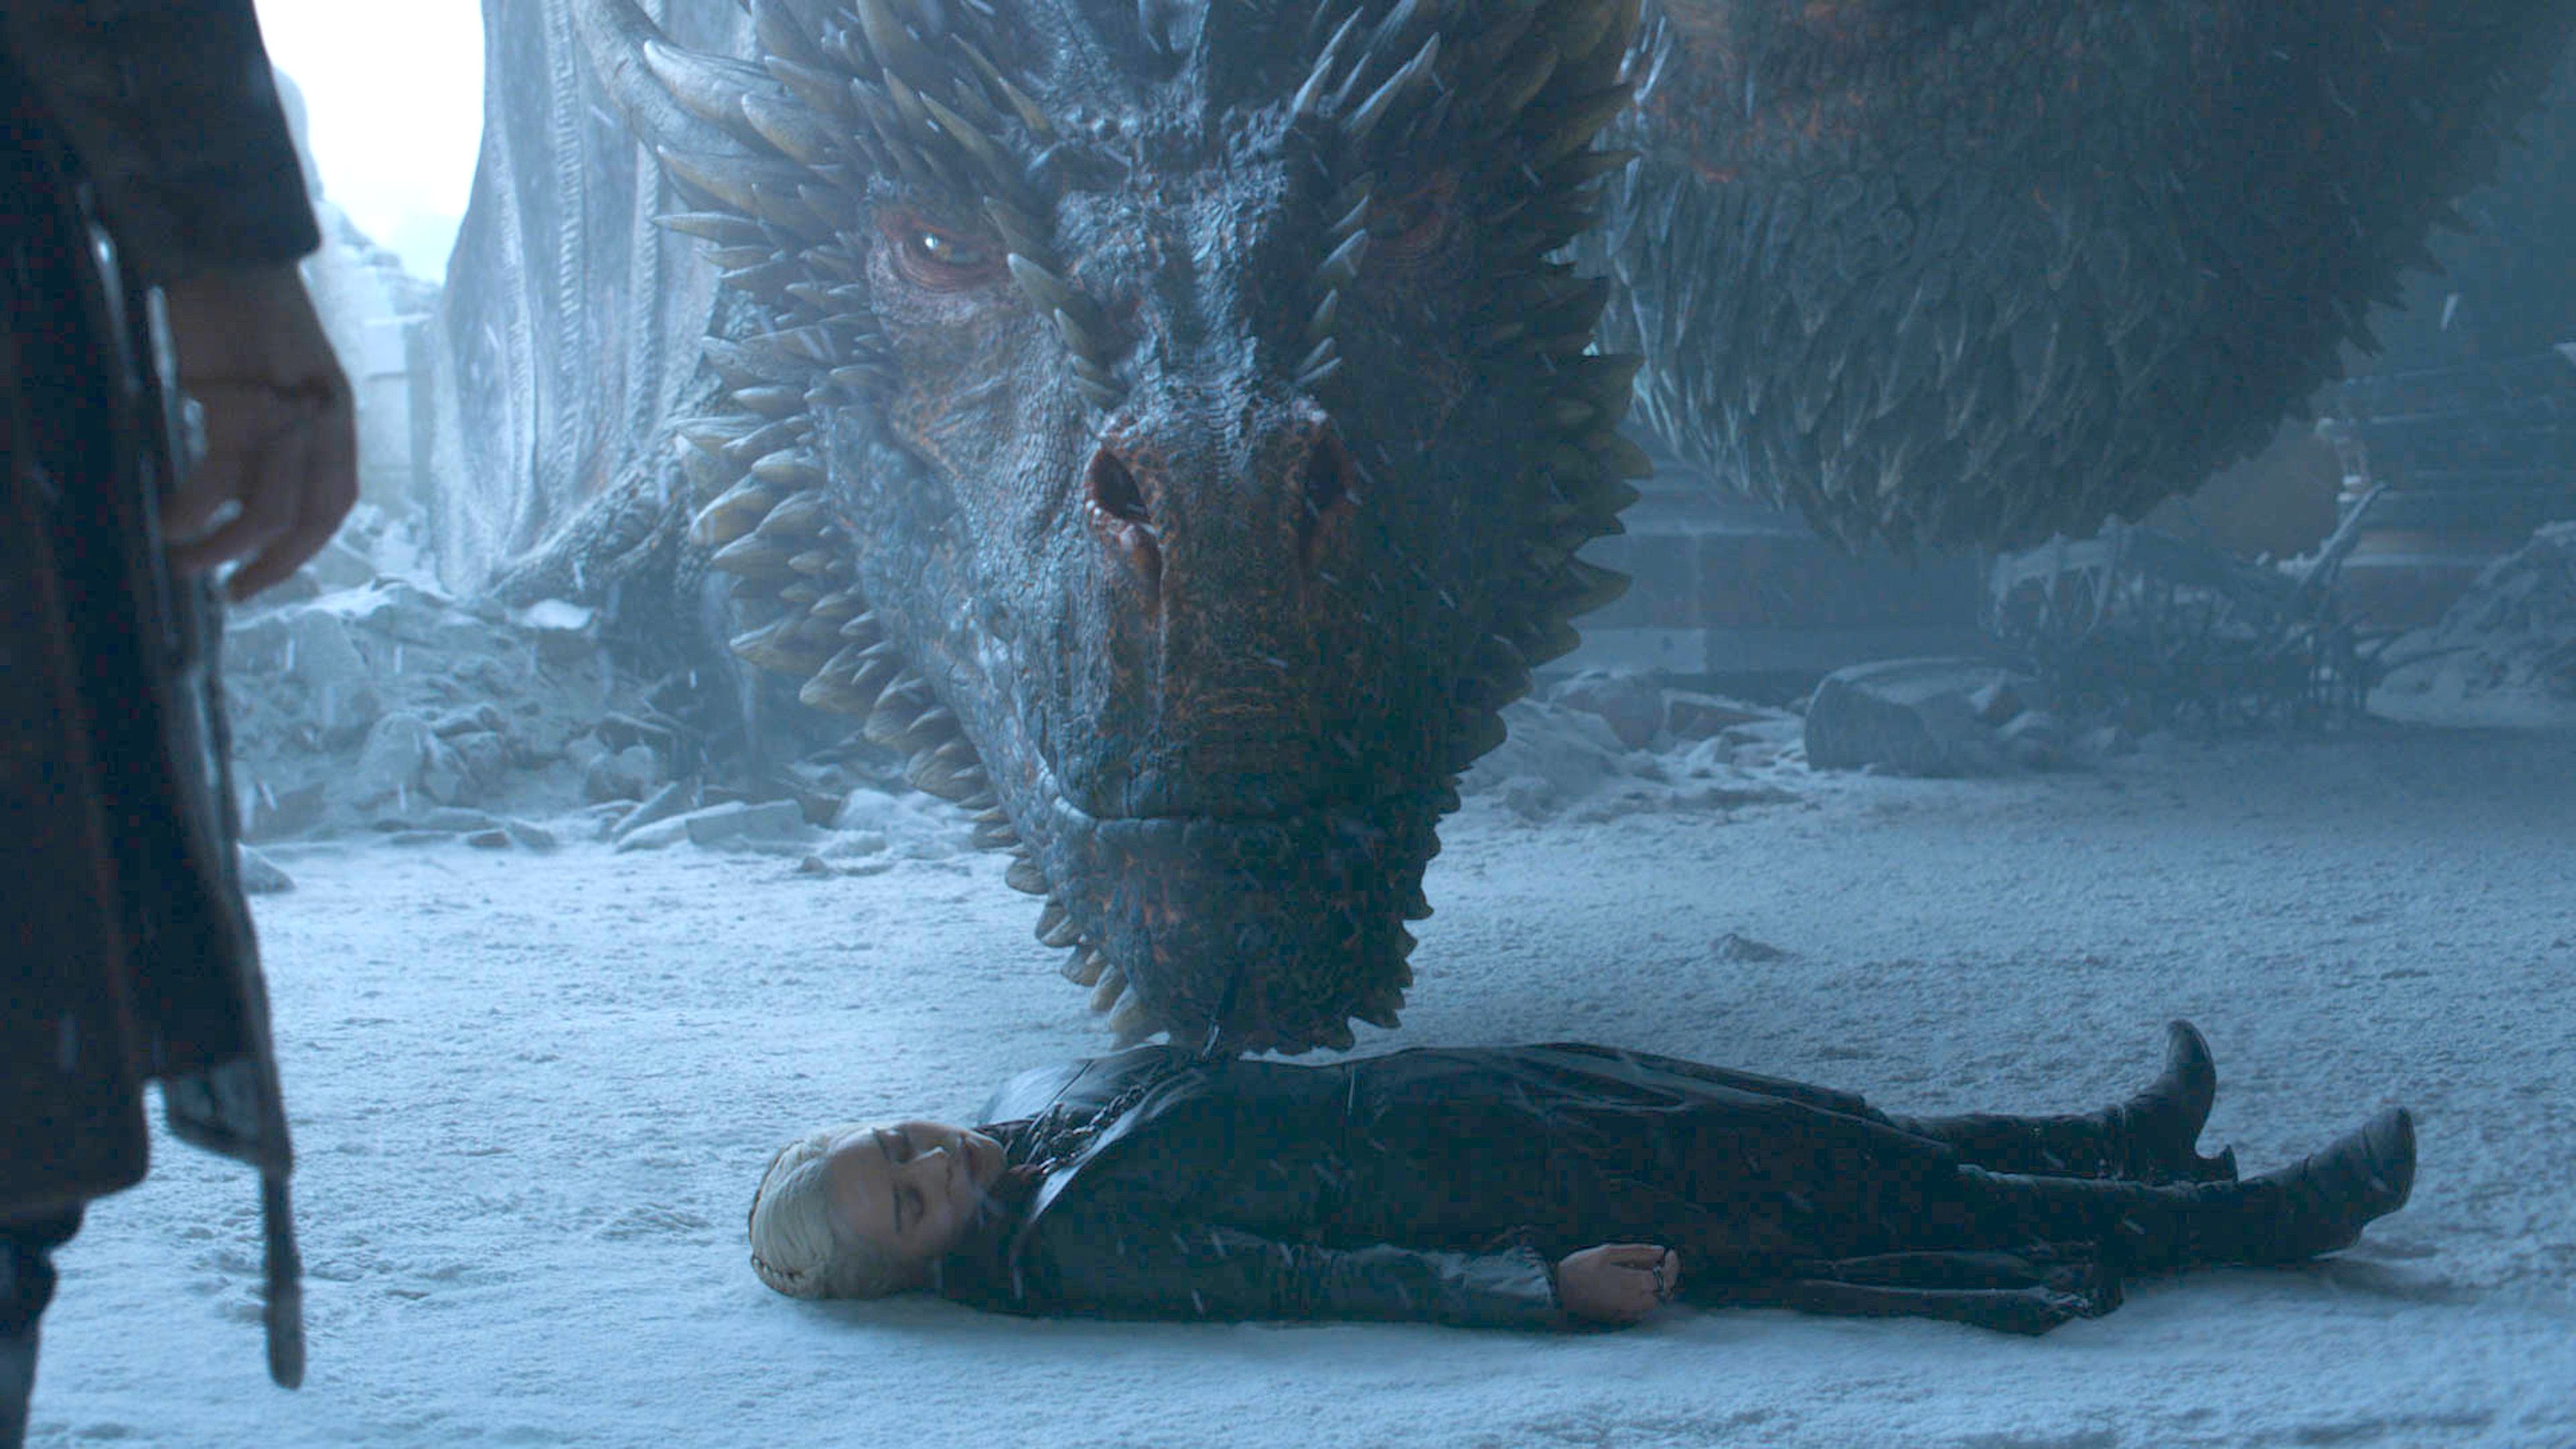 Drogon beside a fallen Daenerys